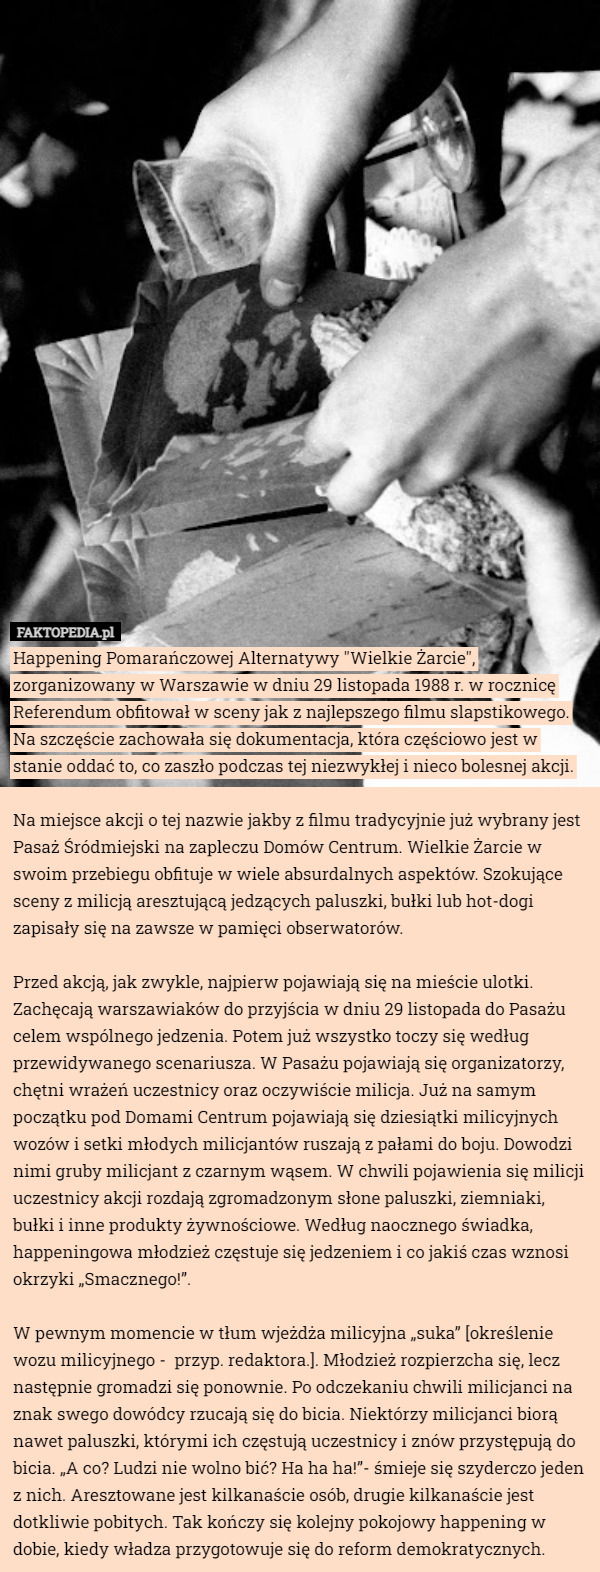 Happening Pomarańczowej Alternatywy "Wielkie Żarcie", zorganizowany w Warszawie w dniu 29 listopada 1988 r. w rocznicę Referendum obfitował w sceny jak z najlepszego filmu slapstikowego. Na szczęście zachowała się dokumentacja, która częściowo jest w stanie oddać to, co zaszło podczas tej niezwykłej i nieco bolesnej akcji.

Na miejsce akcji o tej nazwie jakby z filmu tradycyjnie już wybrany jest Pasaż Śródmiejski na zapleczu Domów Centrum. Wielkie Żarcie w swoim przebiegu obfituje w wiele absurdalnych aspektów. Szokujące sceny z milicją aresztującą jedzących paluszki, bułki lub hot-dogi zapisały się na zawsze w pamięci obserwatorów.

Przed akcją, jak zwykle, najpierw pojawiają się na mieście ulotki. Zachęcają warszawiaków do przyjścia w dniu 29 listopada do Pasażu celem wspólnego jedzenia. Potem już wszystko toczy się według przewidywanego scenariusza. W Pasażu pojawiają się organizatorzy, chętni wrażeń uczestnicy oraz oczywiście milicja. Już na samym początku pod Domami Centrum pojawiają się dziesiątki milicyjnych wozów i setki młodych milicjantów ruszają z pałami do boju. Dowodzi nimi gruby milicjant z czarnym wąsem. W chwili pojawienia się milicji uczestnicy akcji rozdają zgromadzonym słone paluszki, ziemniaki, bułki i inne produkty żywnościowe. Według naocznego świadka, happeningowa młodzież częstuje się jedzeniem i co jakiś czas wznosi okrzyki „Smacznego!”.

W pewnym momencie w tłum wjeżdża milicyjna „suka” [określenie wozu milicyjnego -  przyp. redaktora.]. Młodzież rozpierzcha się, lecz następnie gromadzi się ponownie. Po odczekaniu chwili milicjanci na znak swego dowódcy rzucają się do bicia. Niektórzy milicjanci biorą nawet paluszki, którymi ich częstują uczestnicy i znów przystępują do bicia. „A co? Ludzi nie wolno bić? Ha ha ha!”- śmieje się szyderczo jeden z nich. Aresztowane jest kilkanaście osób, drugie kilkanaście jest dotkliwie pobitych. Tak kończy się kolejny pokojowy happening w dobie, kiedy władza przygotowuje się do reform demokratycznych. 